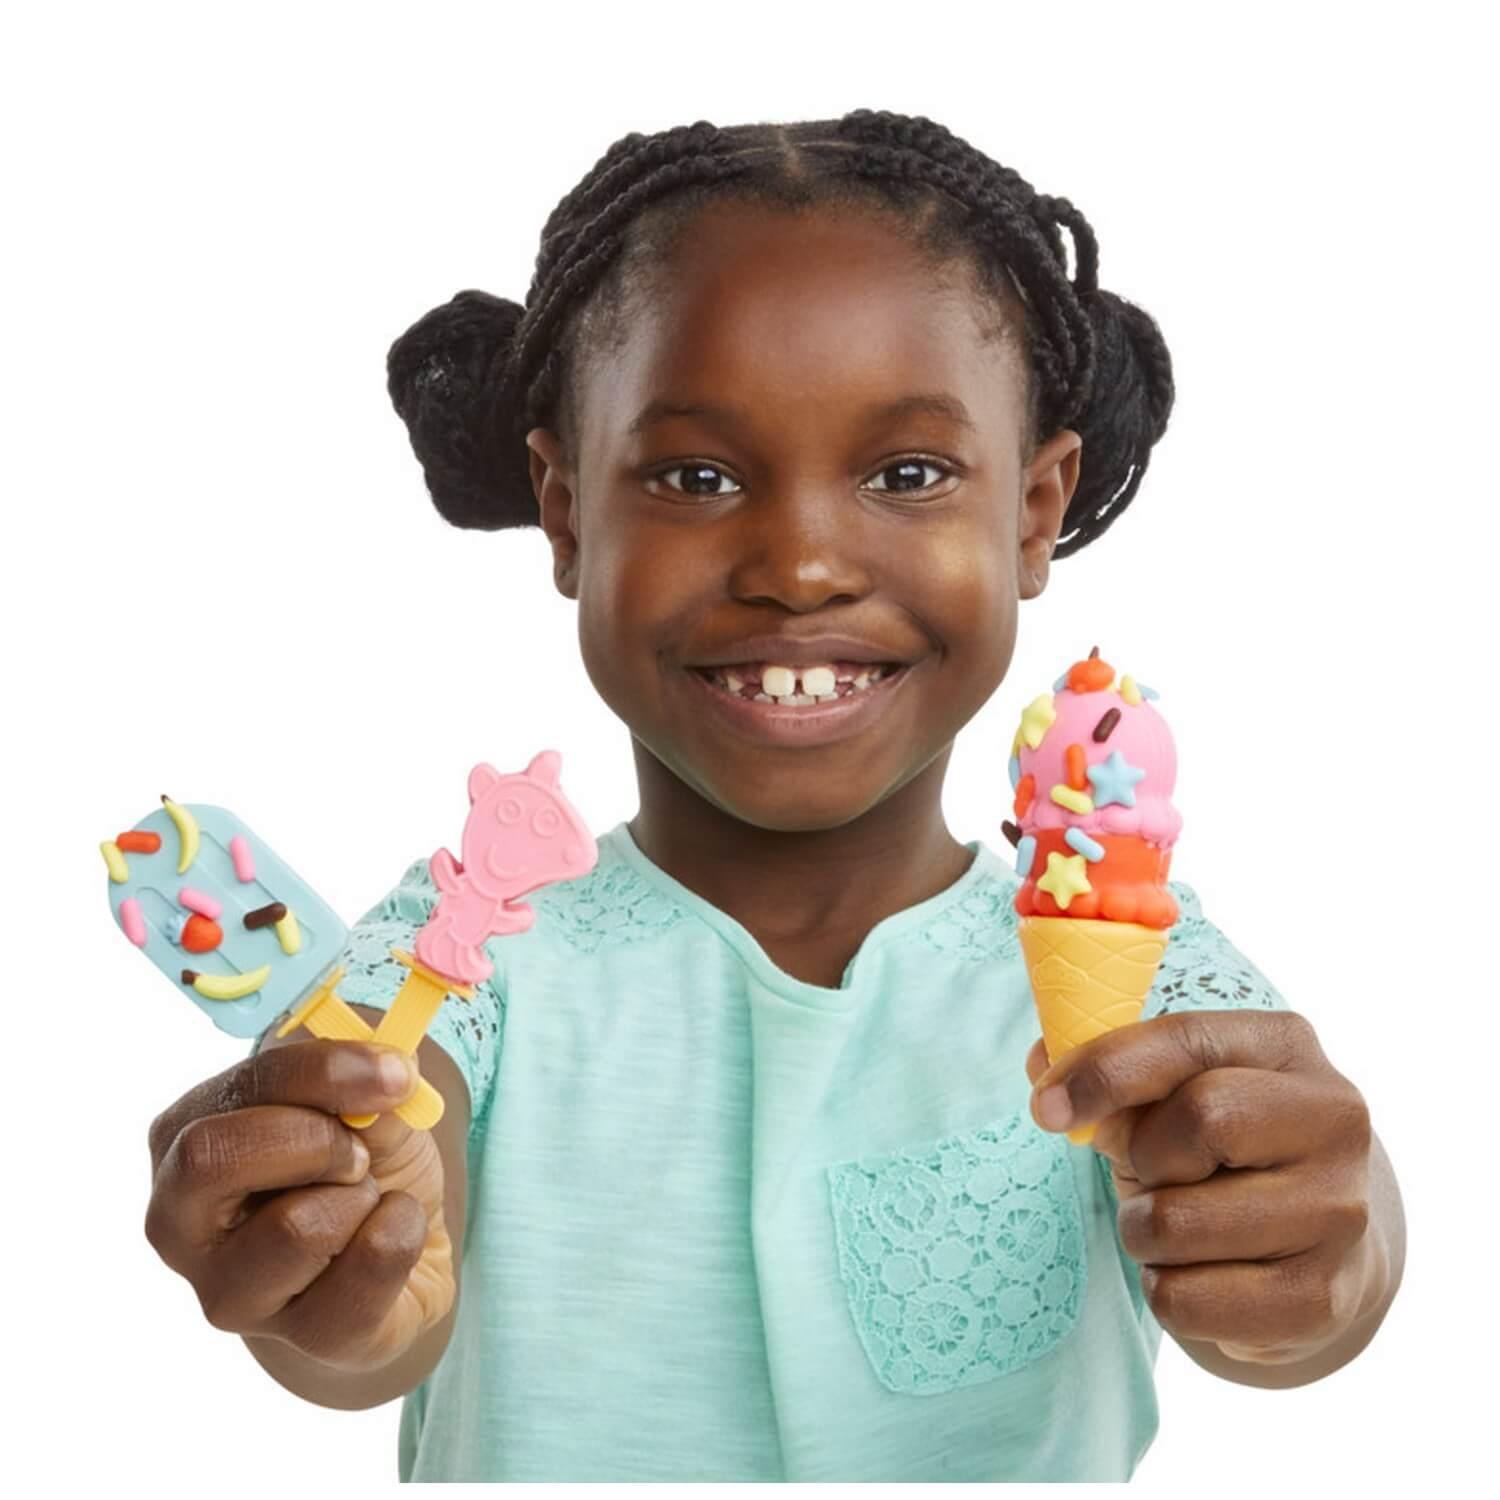 Pâte à modeler Play-Doh Peppa Pig : Le marchand de glace - Jeux et